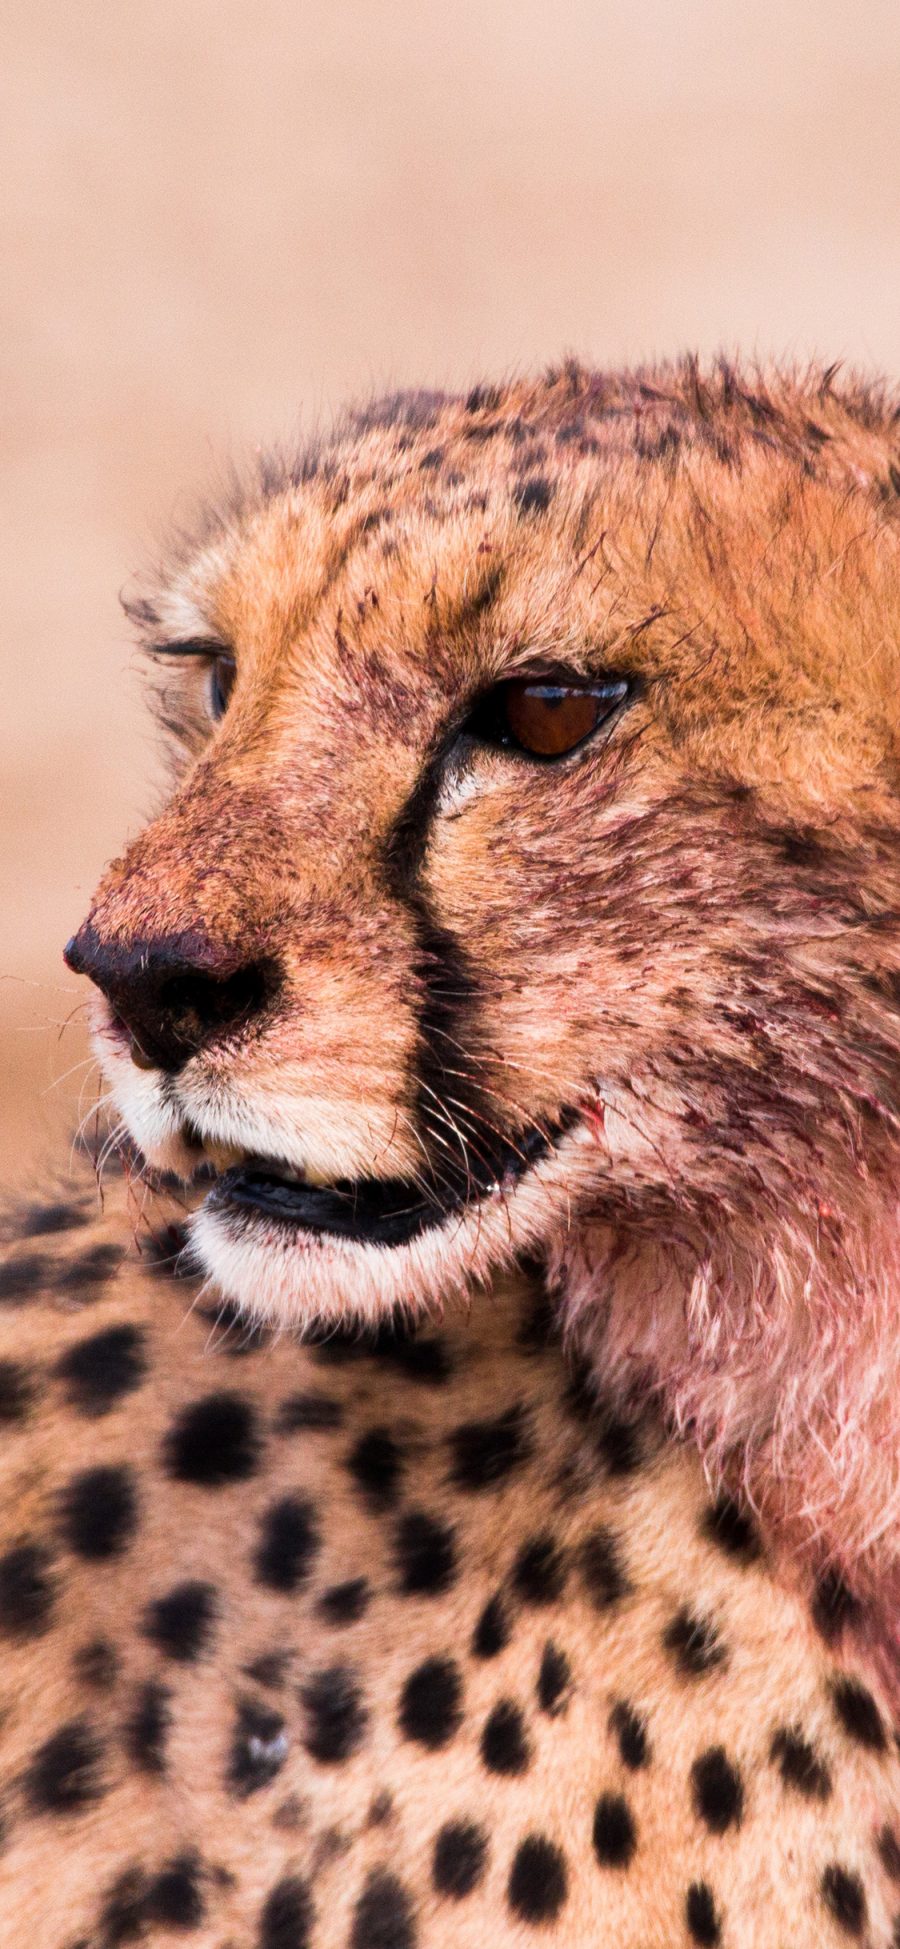 [2436×1125]豹 猎豹 凶猛 豹纹 皮毛 苹果手机壁纸图片